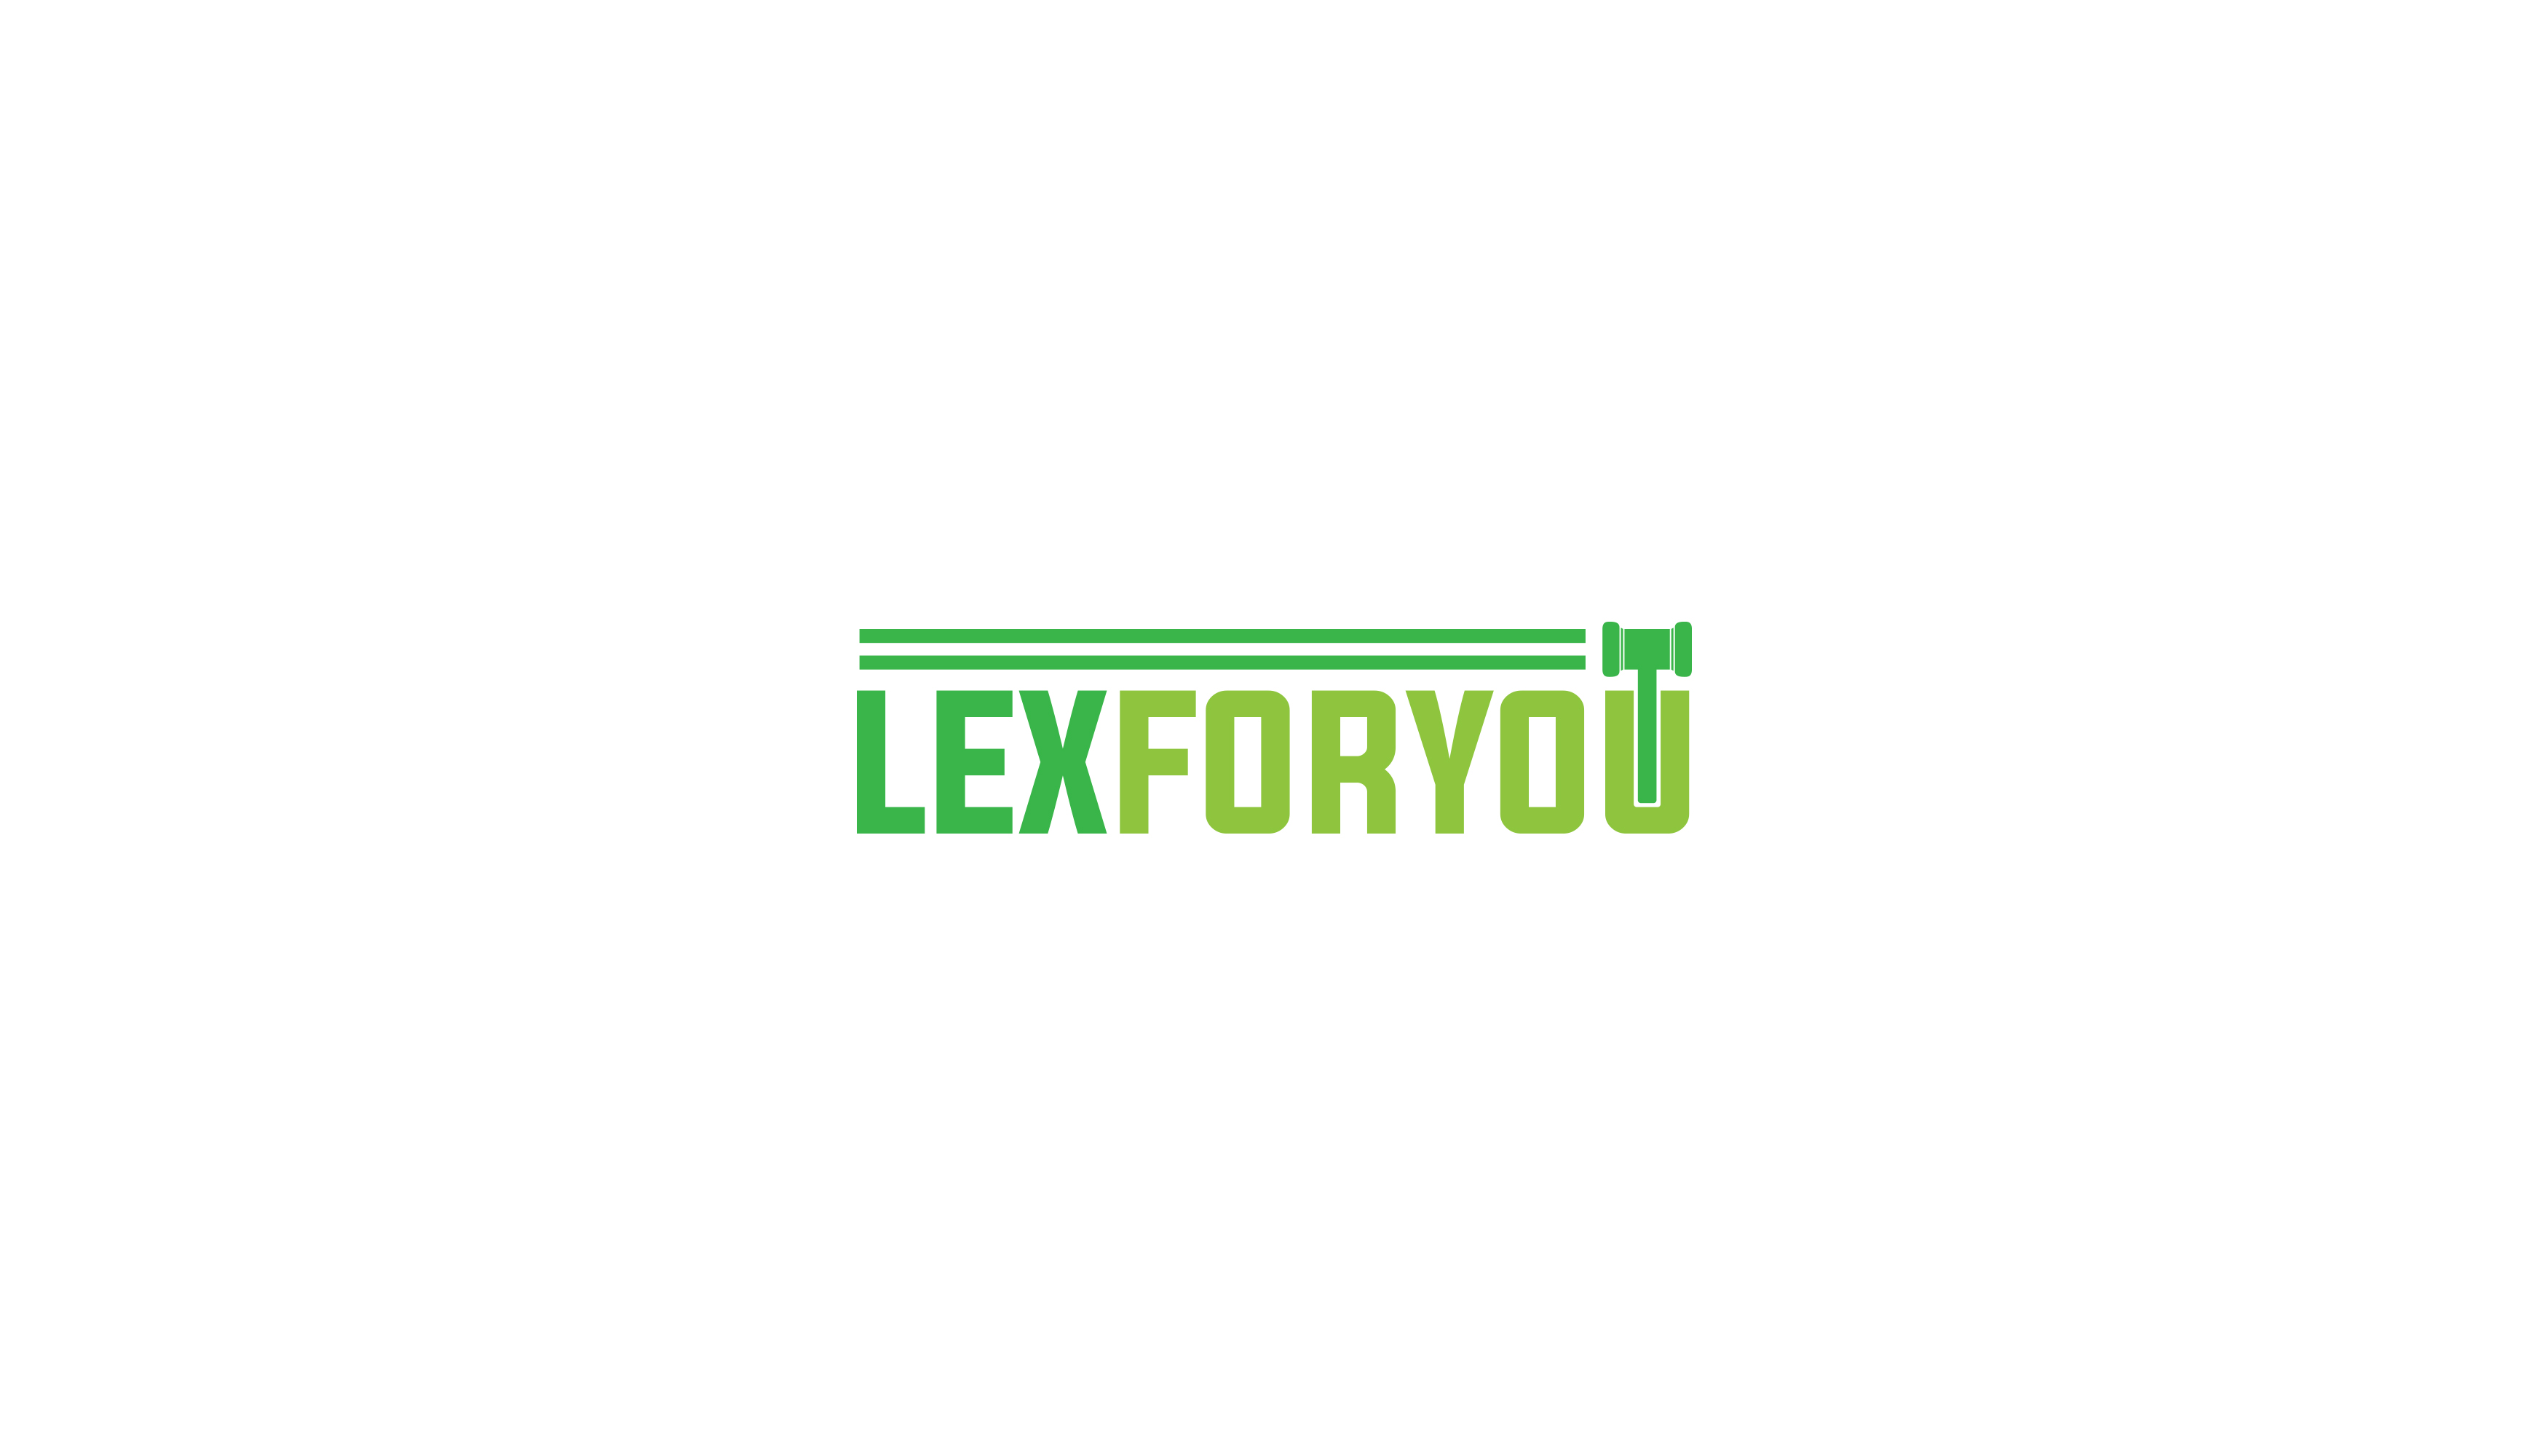 Lex For You Design #2